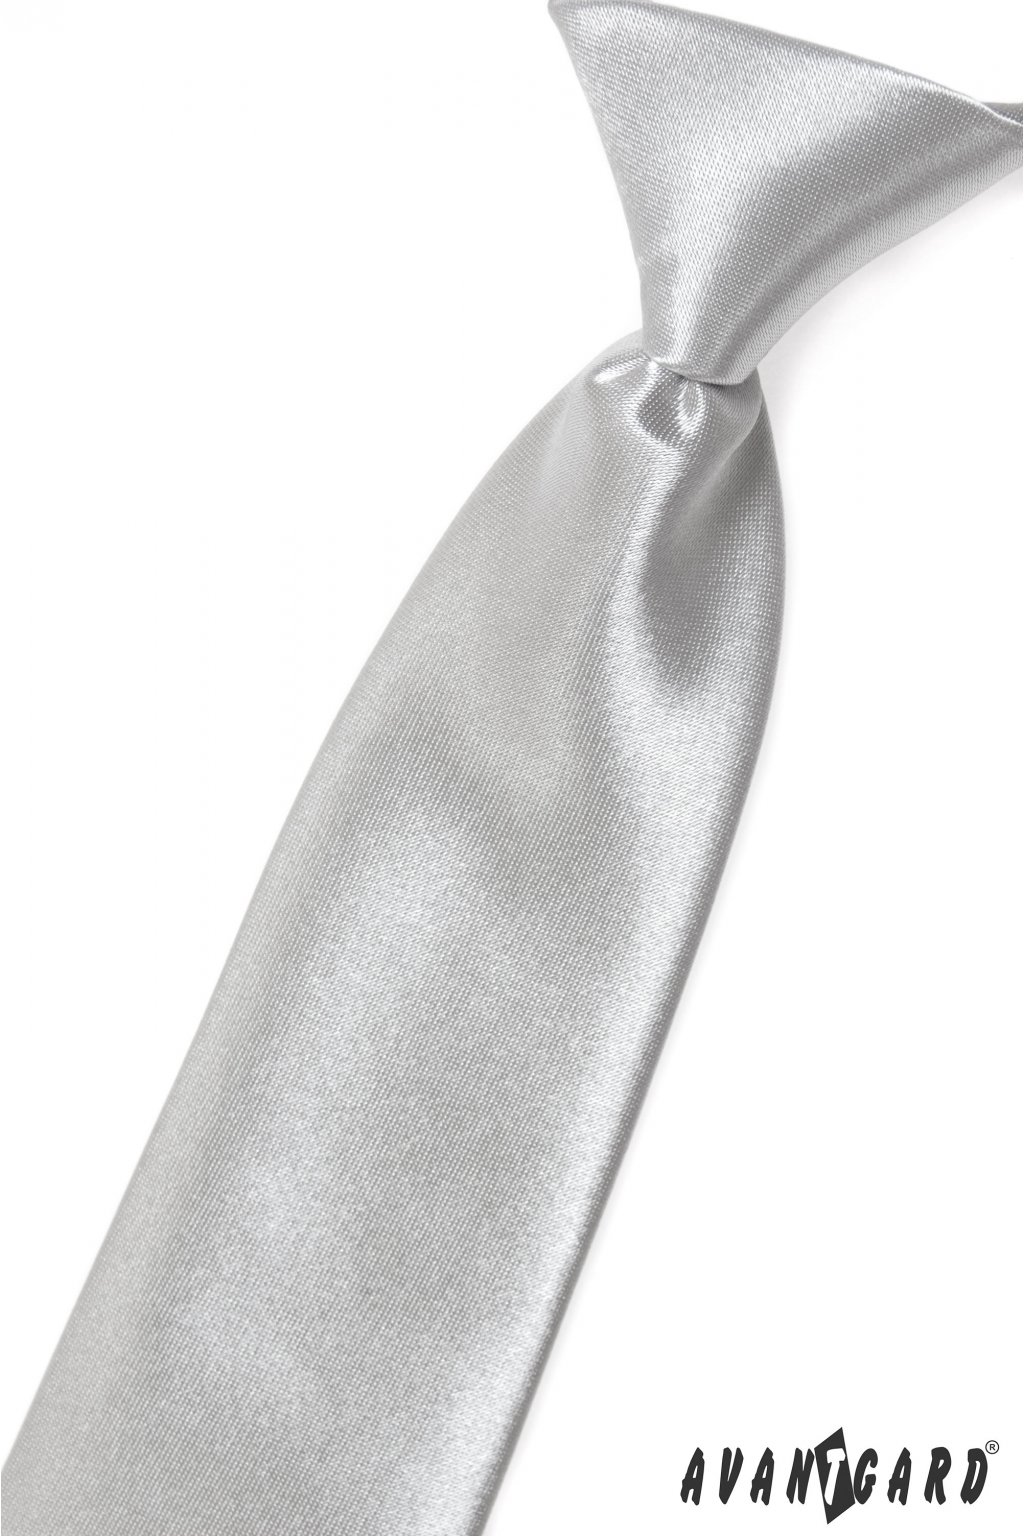 Chlapecká kravata stříbrná 548 - 9021